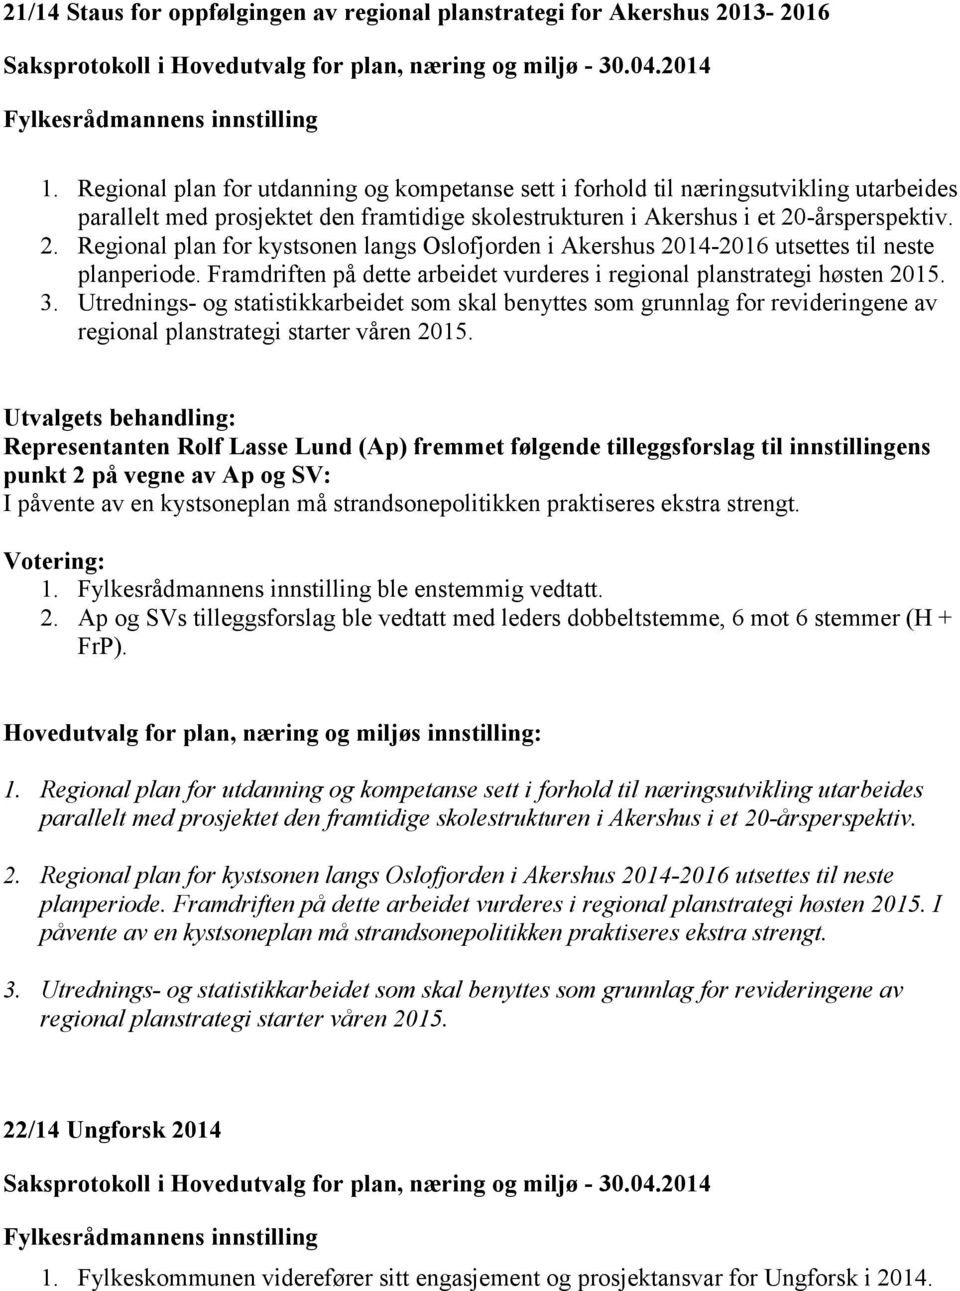 -årsperspektiv. 2. Regional plan for kystsonen langs Oslofjorden i Akershus 2014-2016 utsettes til neste planperiode. Framdriften på dette arbeidet vurderes i regional planstrategi høsten 2015. 3.